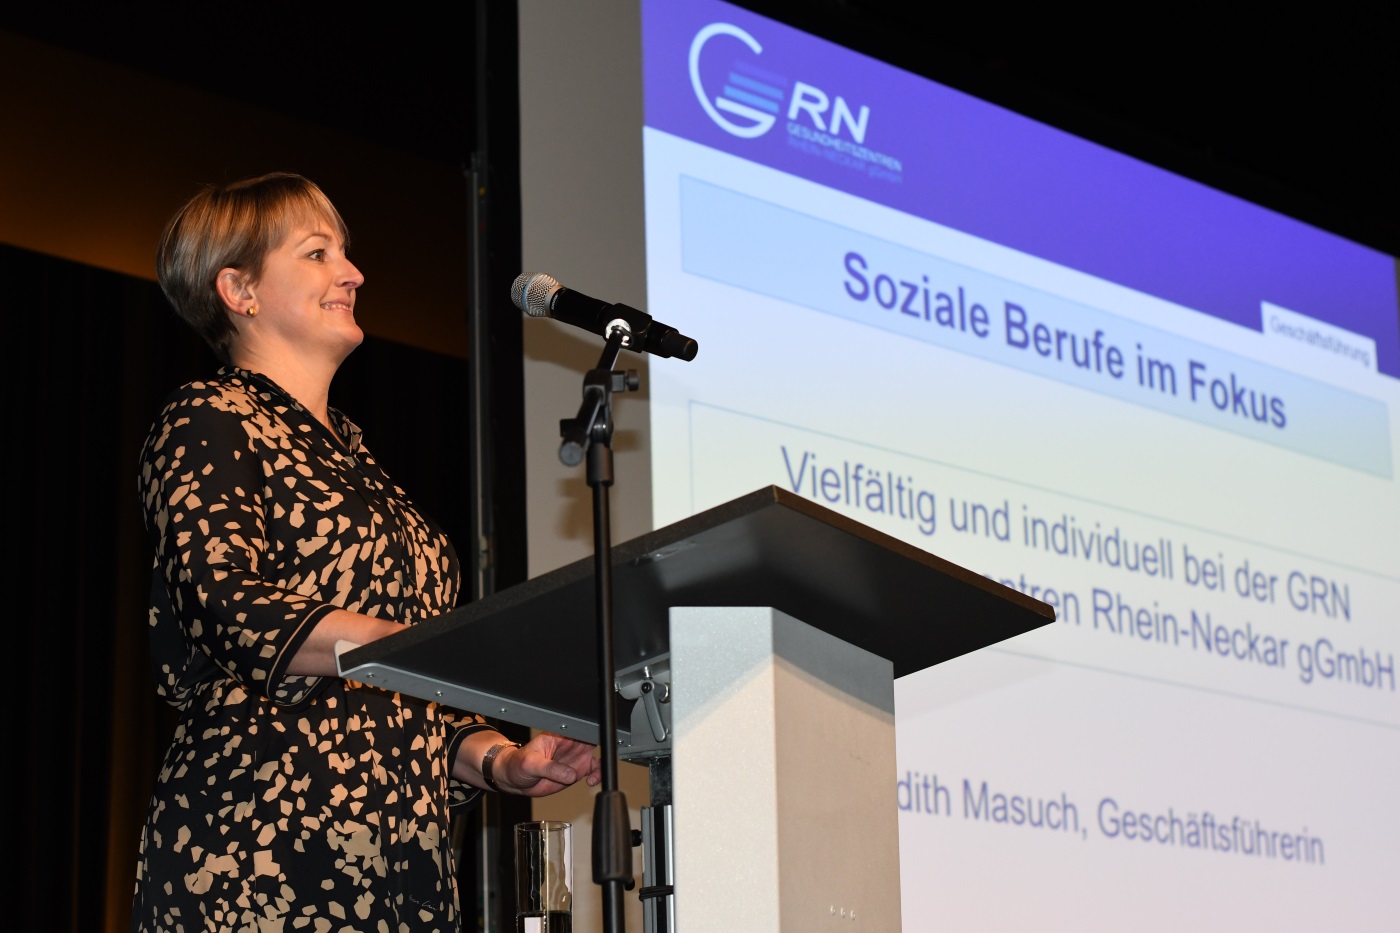 GRN-Geschäftsführerin Judith Masuch referiert bei der Auftaktveranstaltung der RNK-Aktion Soziale Berufe